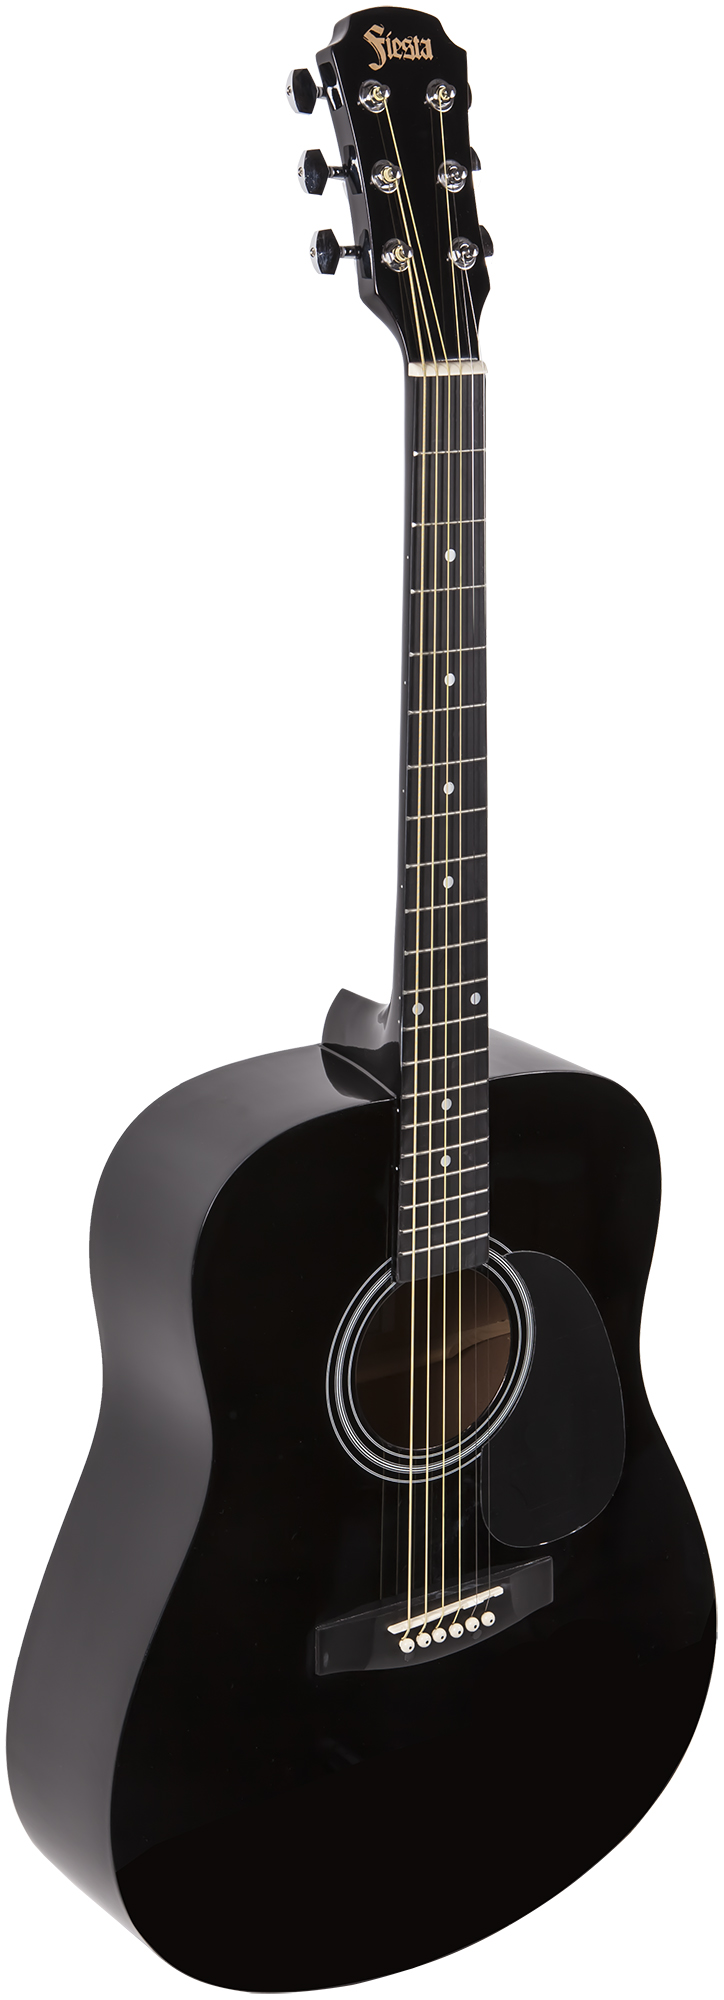 Акустические гитары Aria FIESTA FST-300 BK cтруны акустической гитары ziko dp 011 11 50 фосфорная бронза